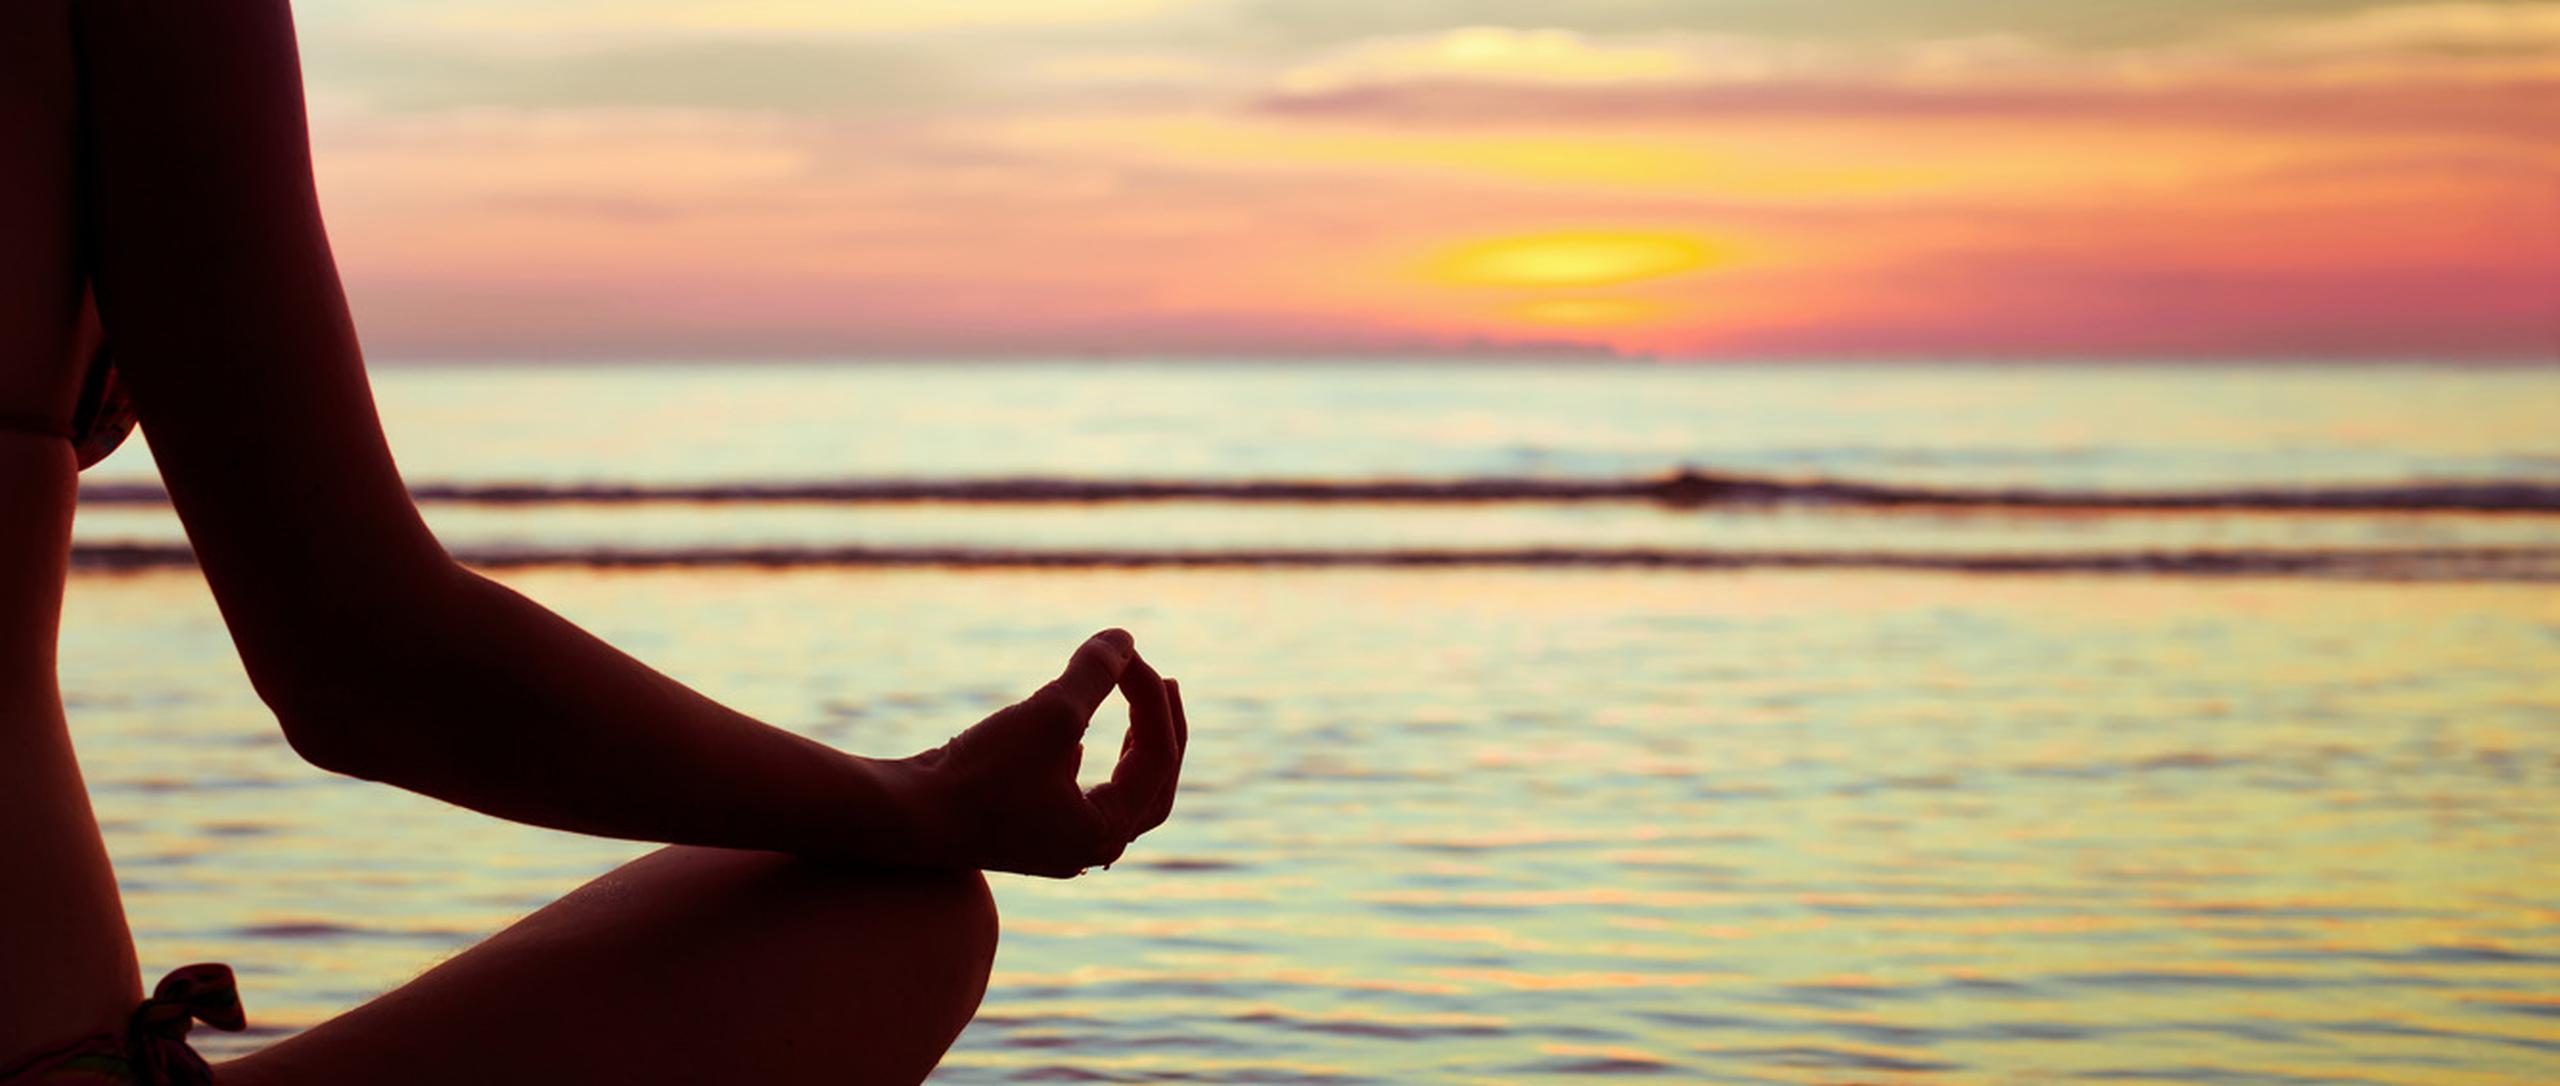 El yoga utiliza diferentes ejercicios conocidos como posturas o "asanas" para fortalecer la mente y el cuerpo. (Shutterstock)